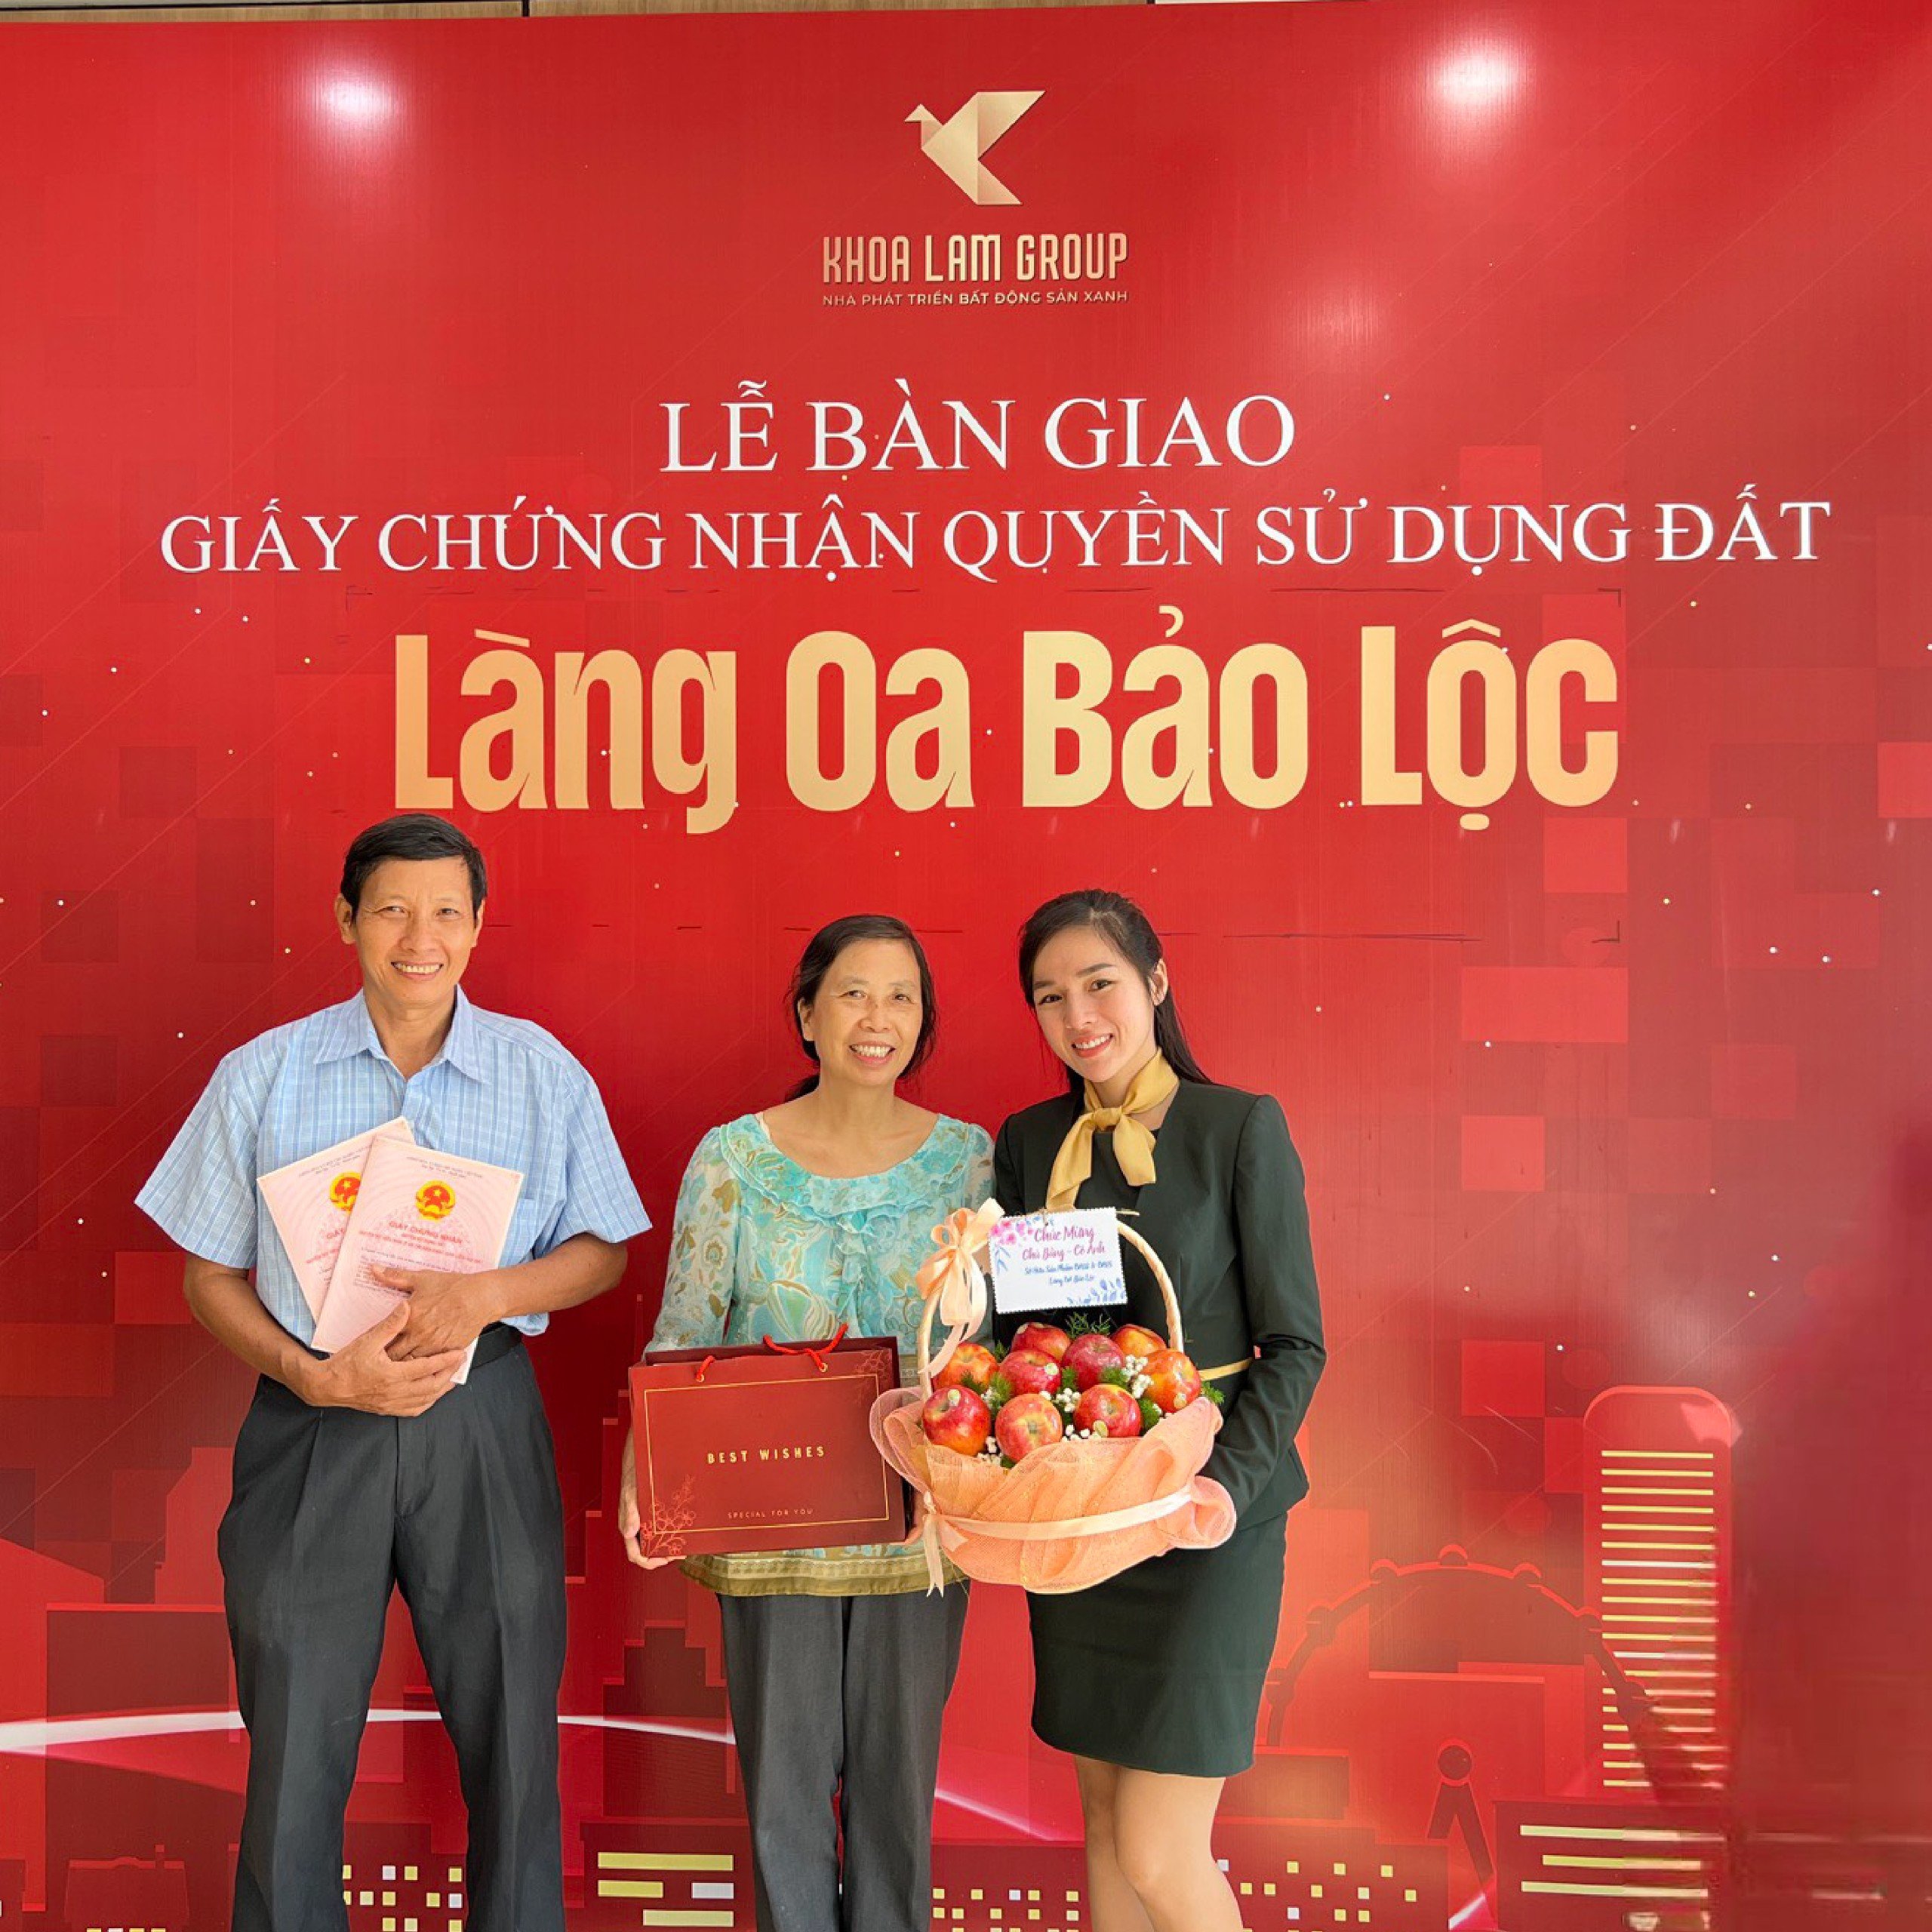 08.le ban giao giay chung nhan quyen su dung dat Lang Oa Bao Loc Khoa Lam Group